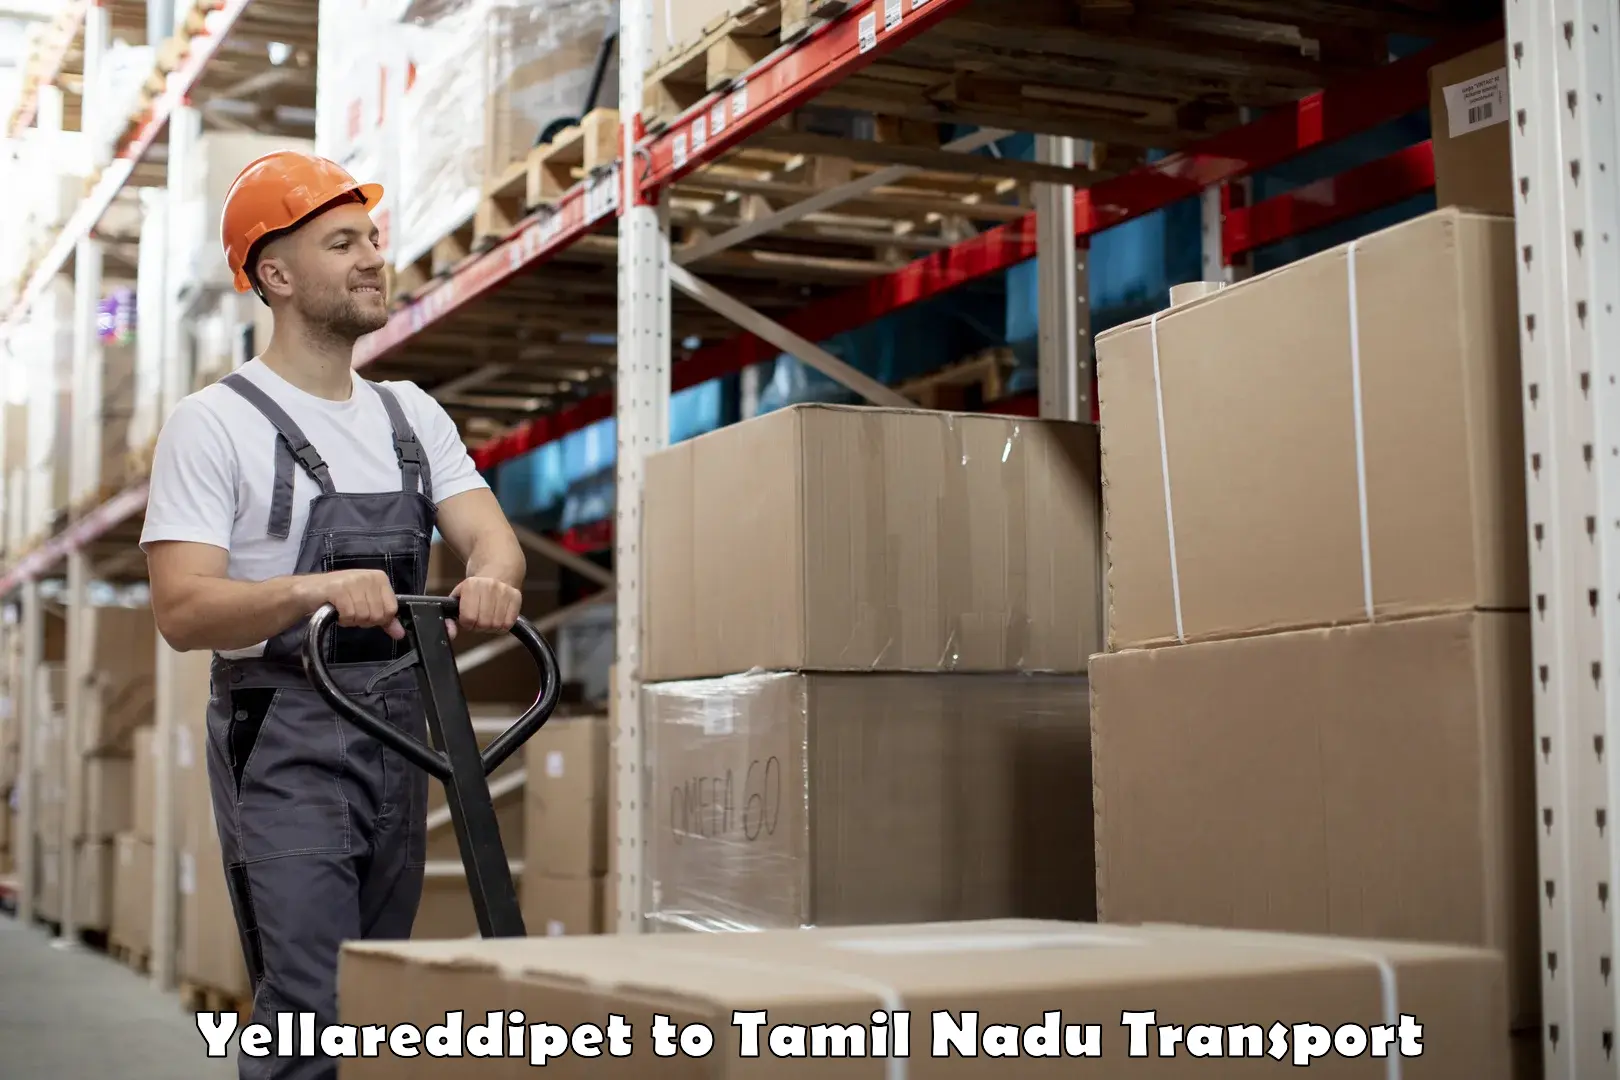 Shipping partner Yellareddipet to Sriperumbudur